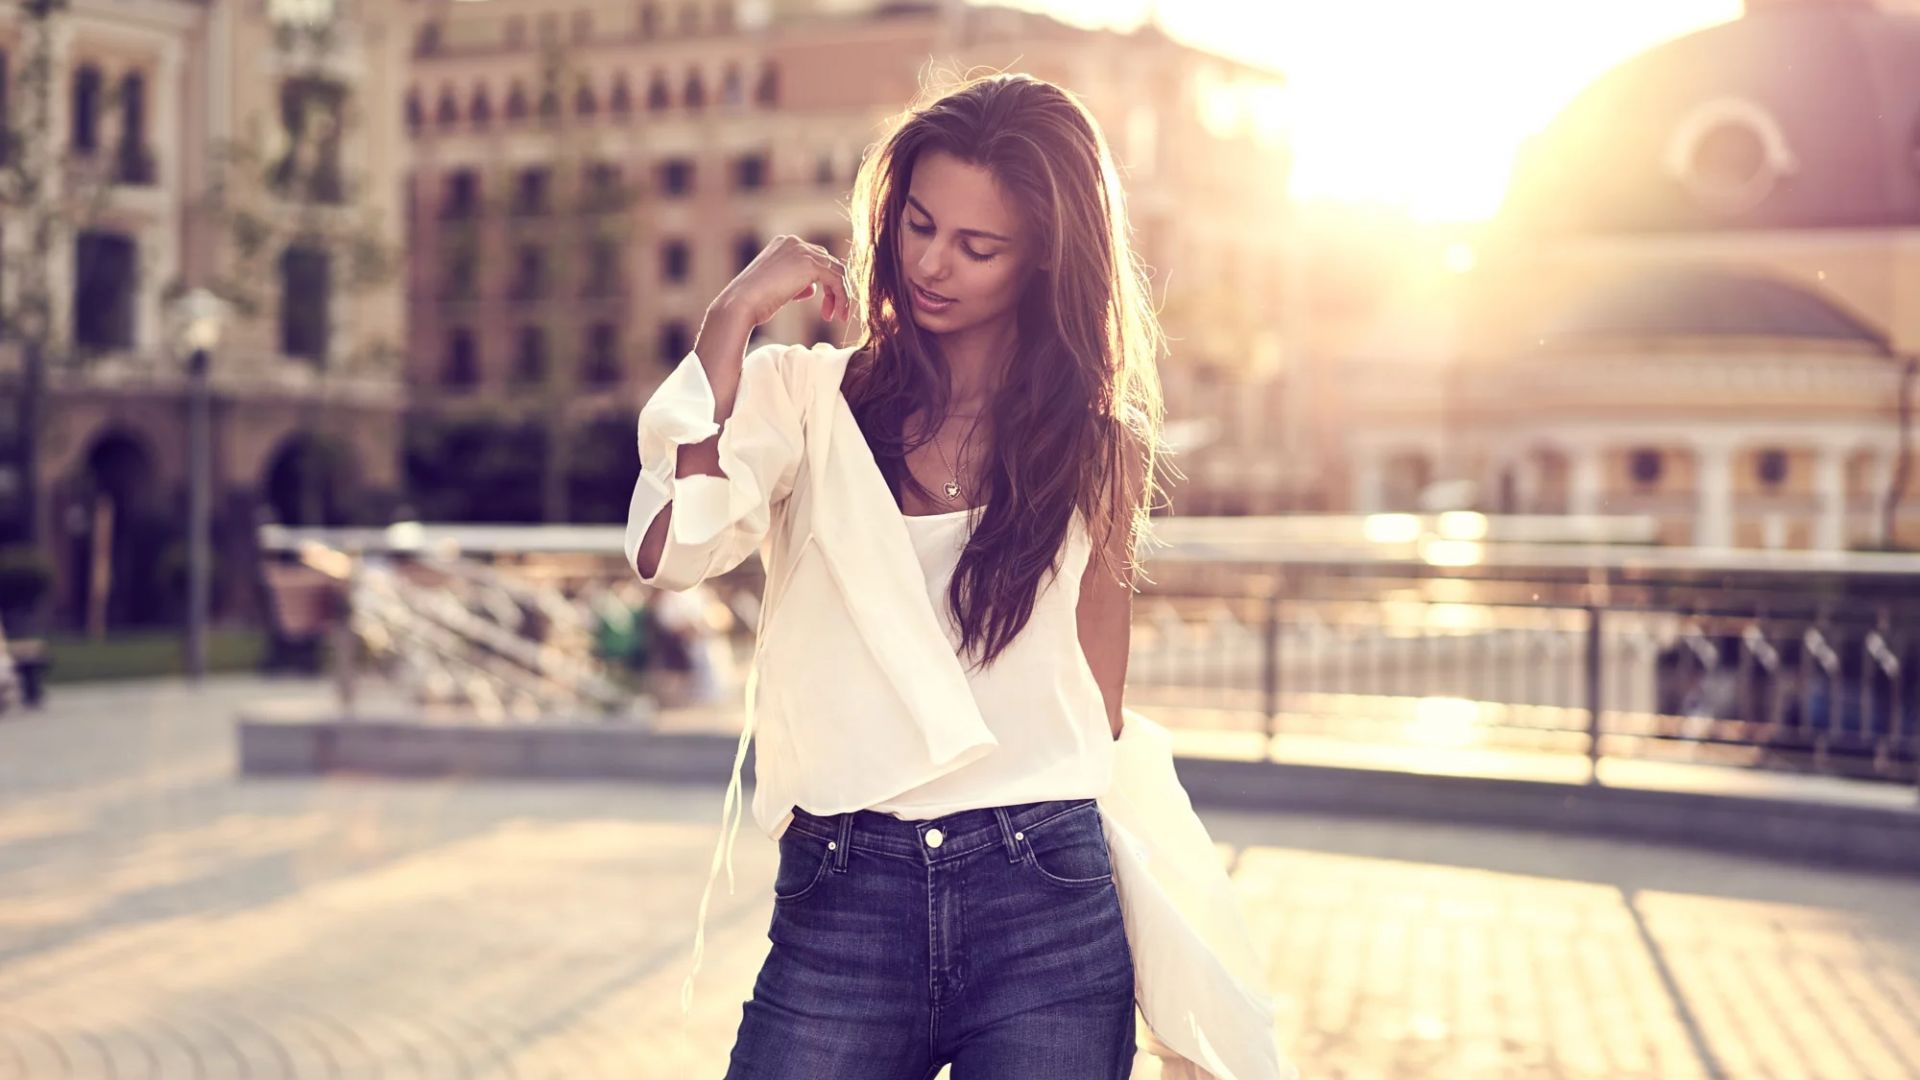 Wallpaper Jeans, girl model, street, sunlight